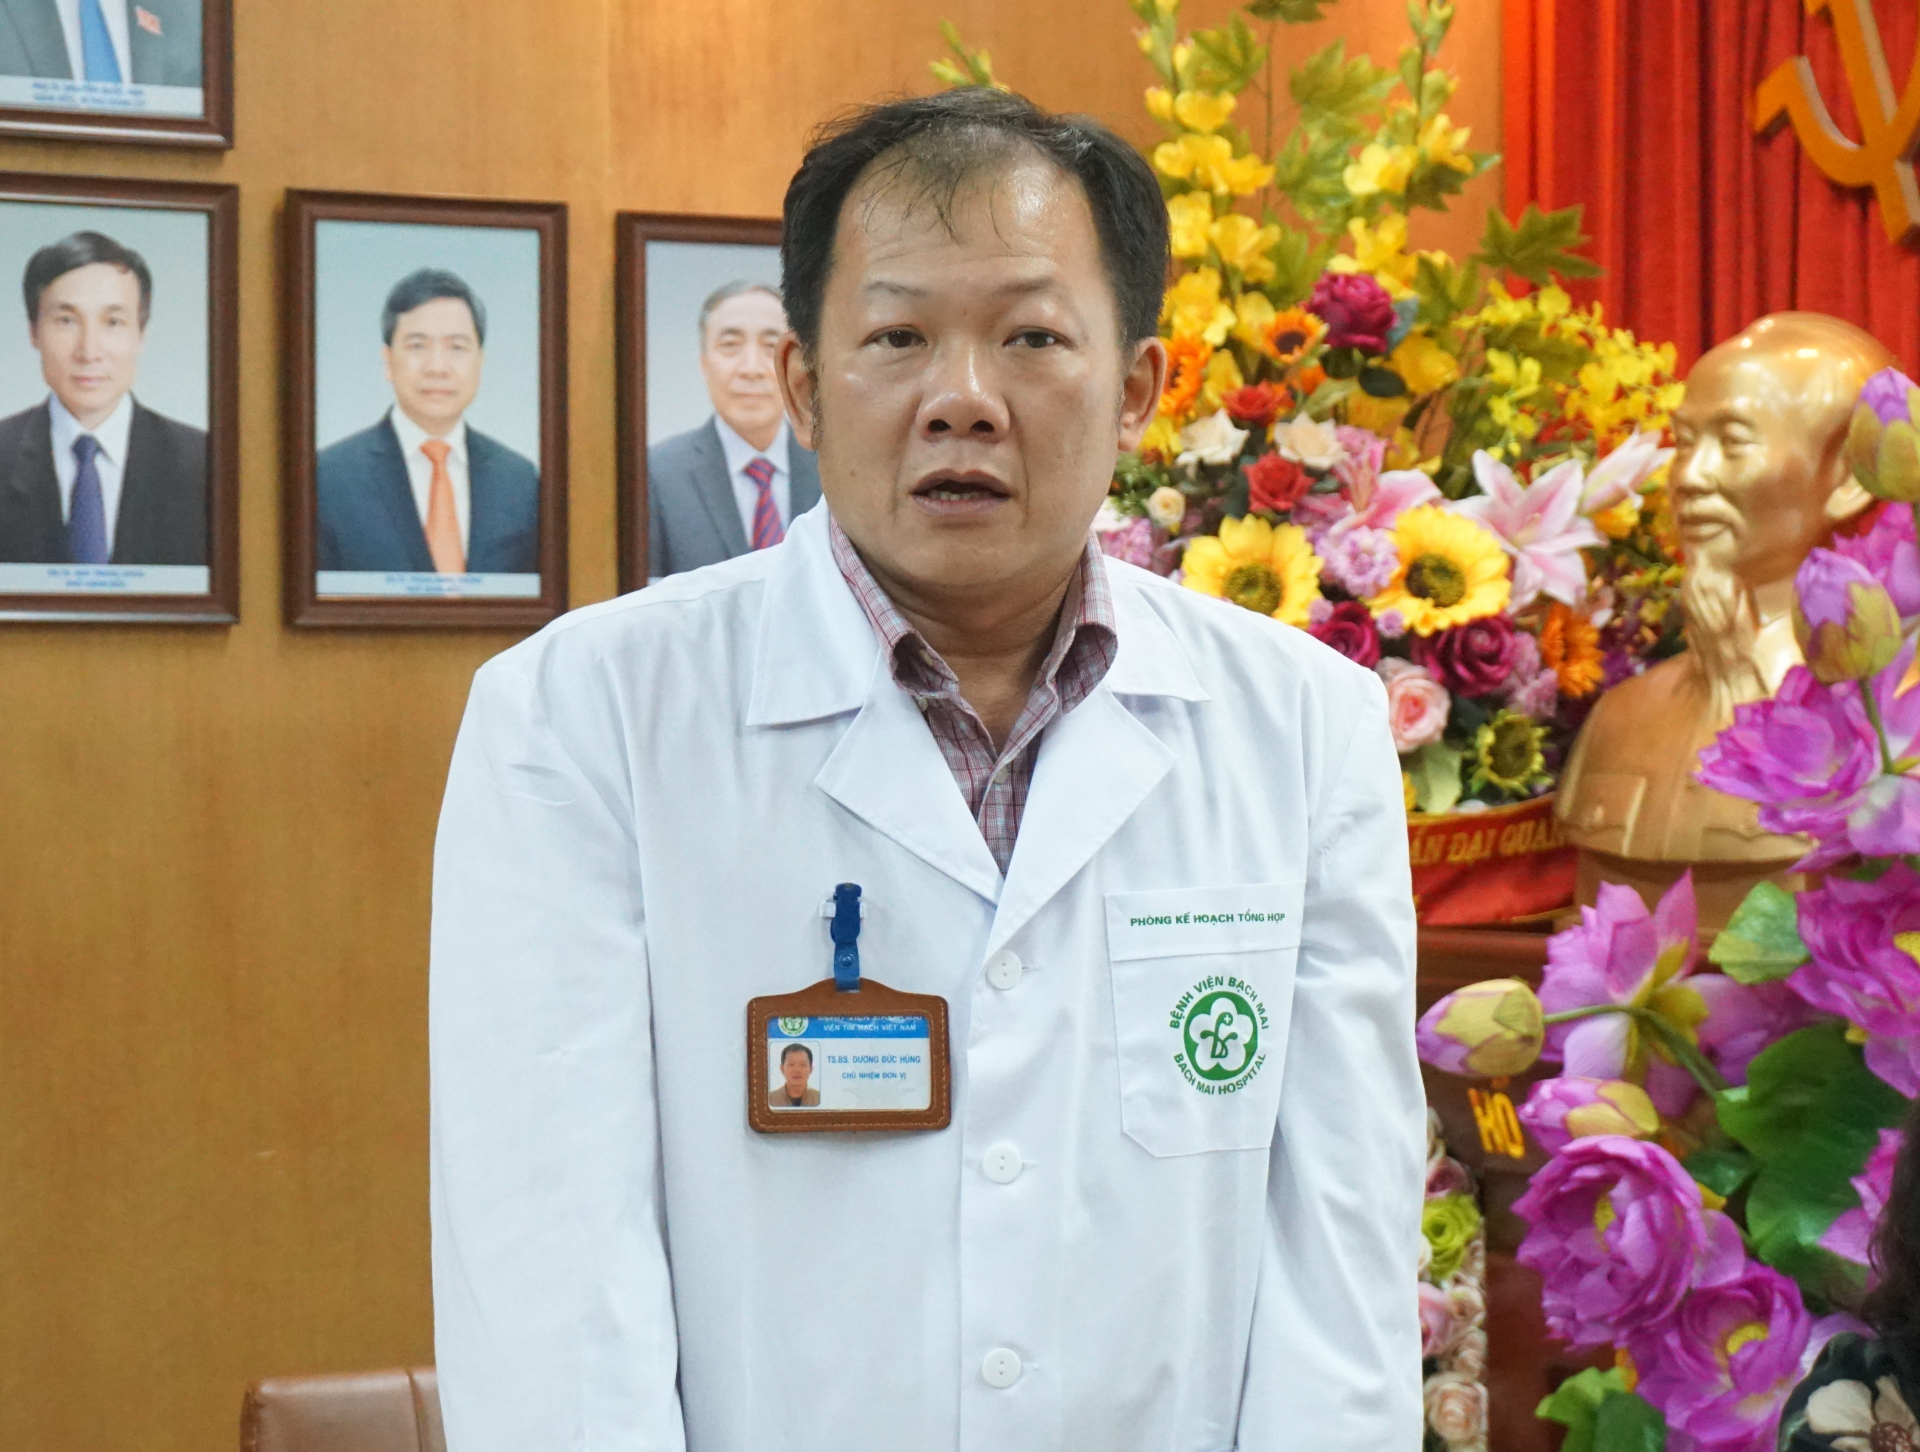 Bác sĩ Dương Đức Hùng, Trưởng phòng Kế hoạch Tổng hợp, Bệnh viện Bạch Mai 